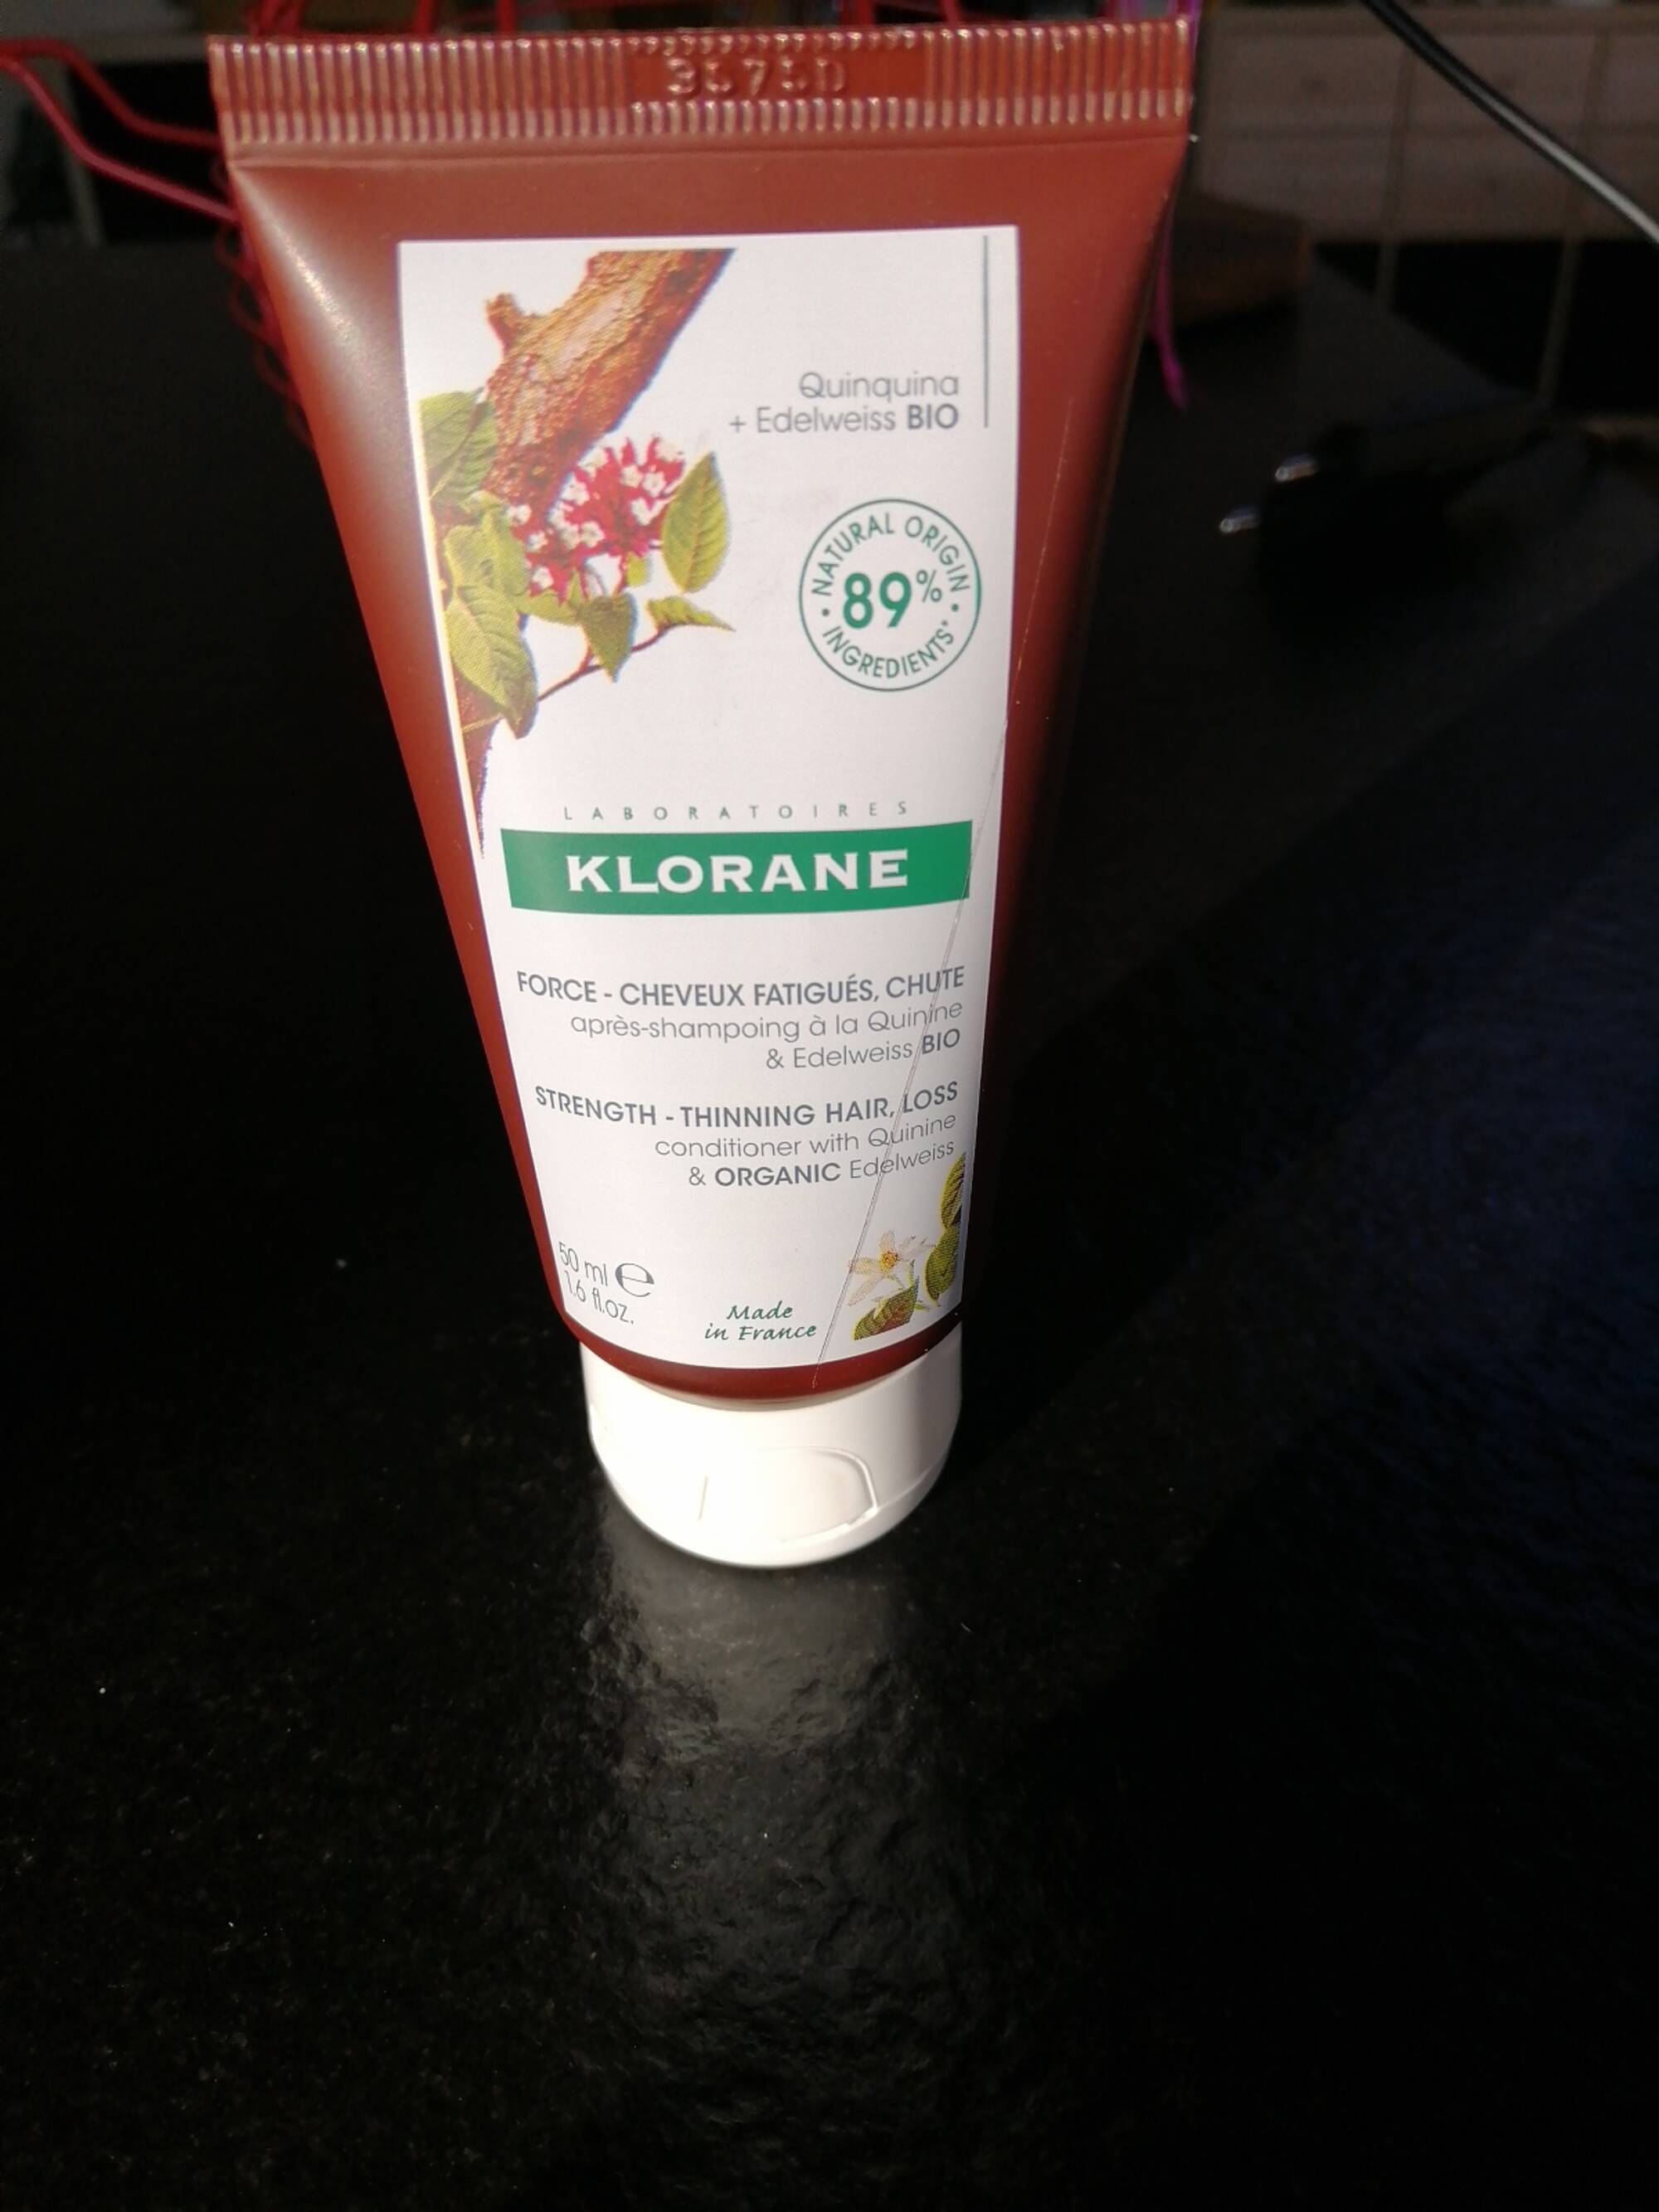 KLORANE - Après-shampoing à la quinine et edelweiss